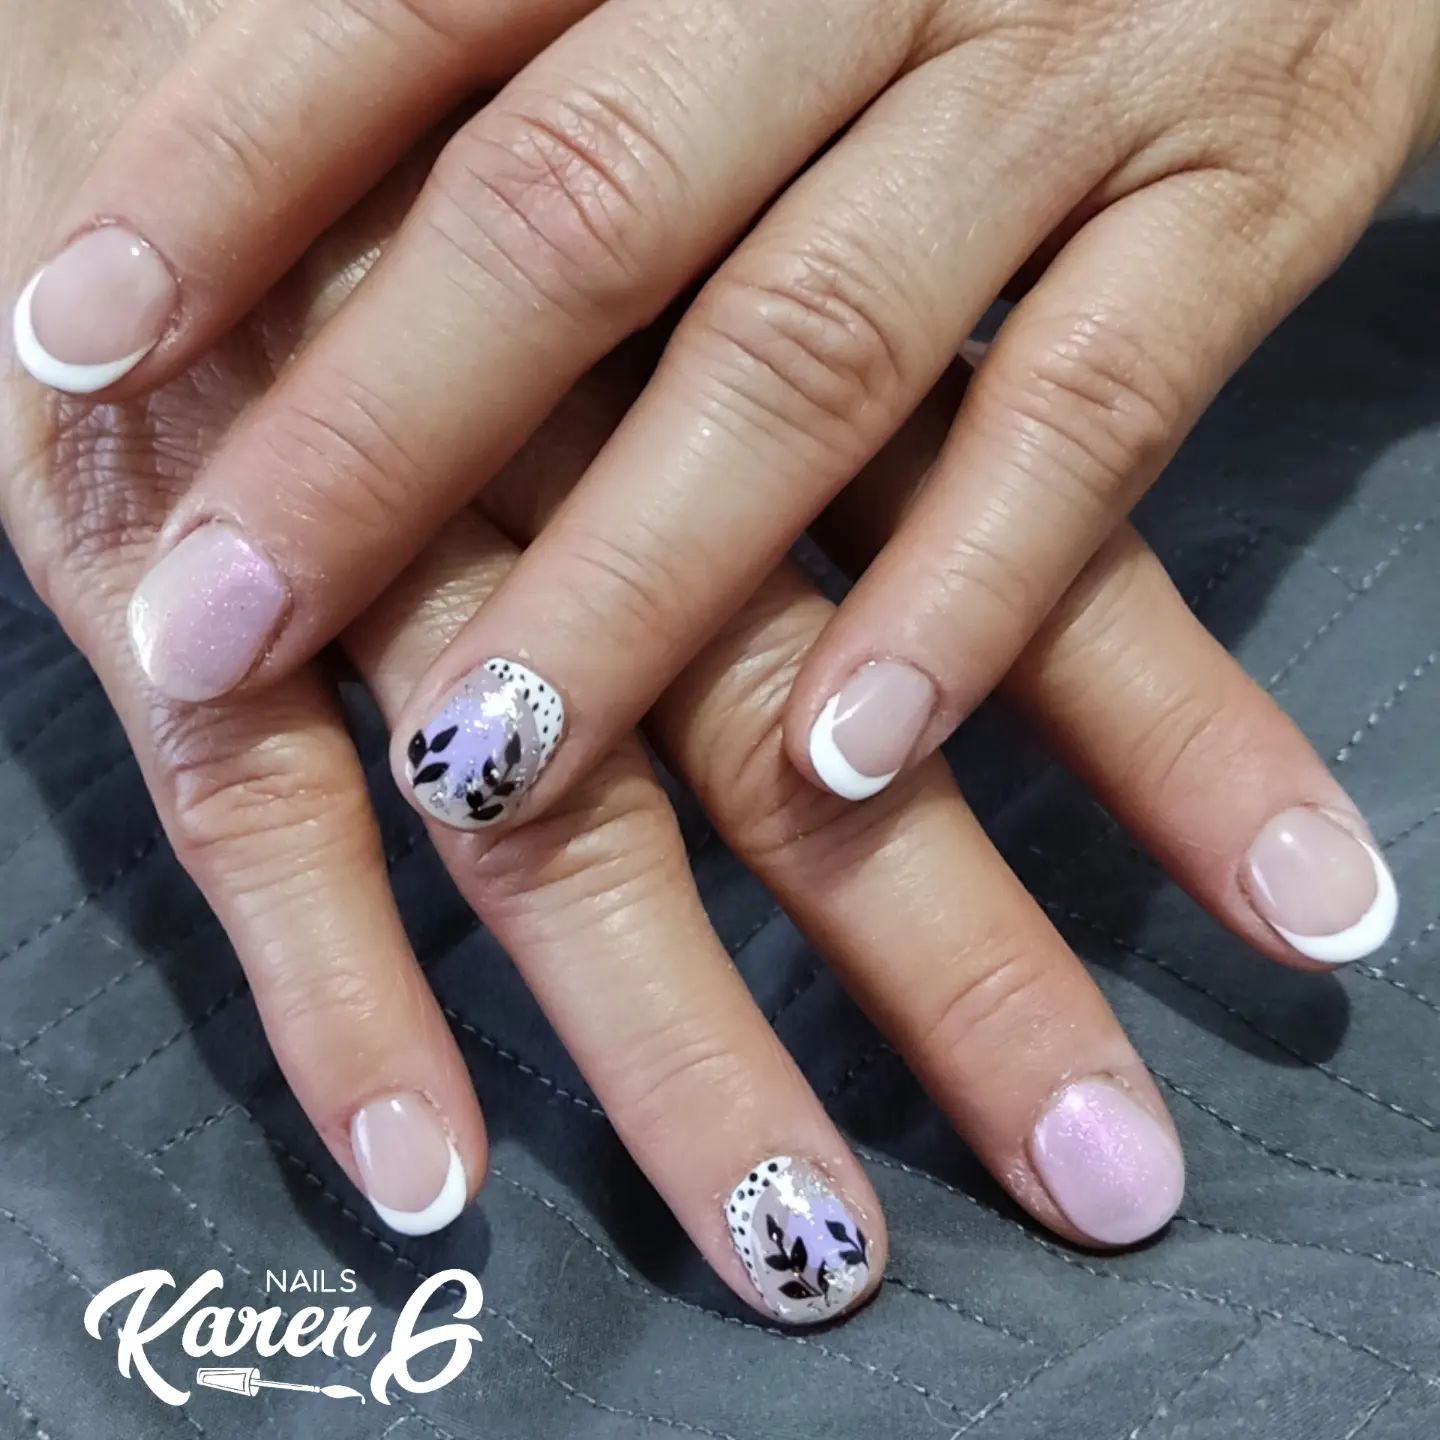 Domicilio de uñas en Medellín - Karen G Nails